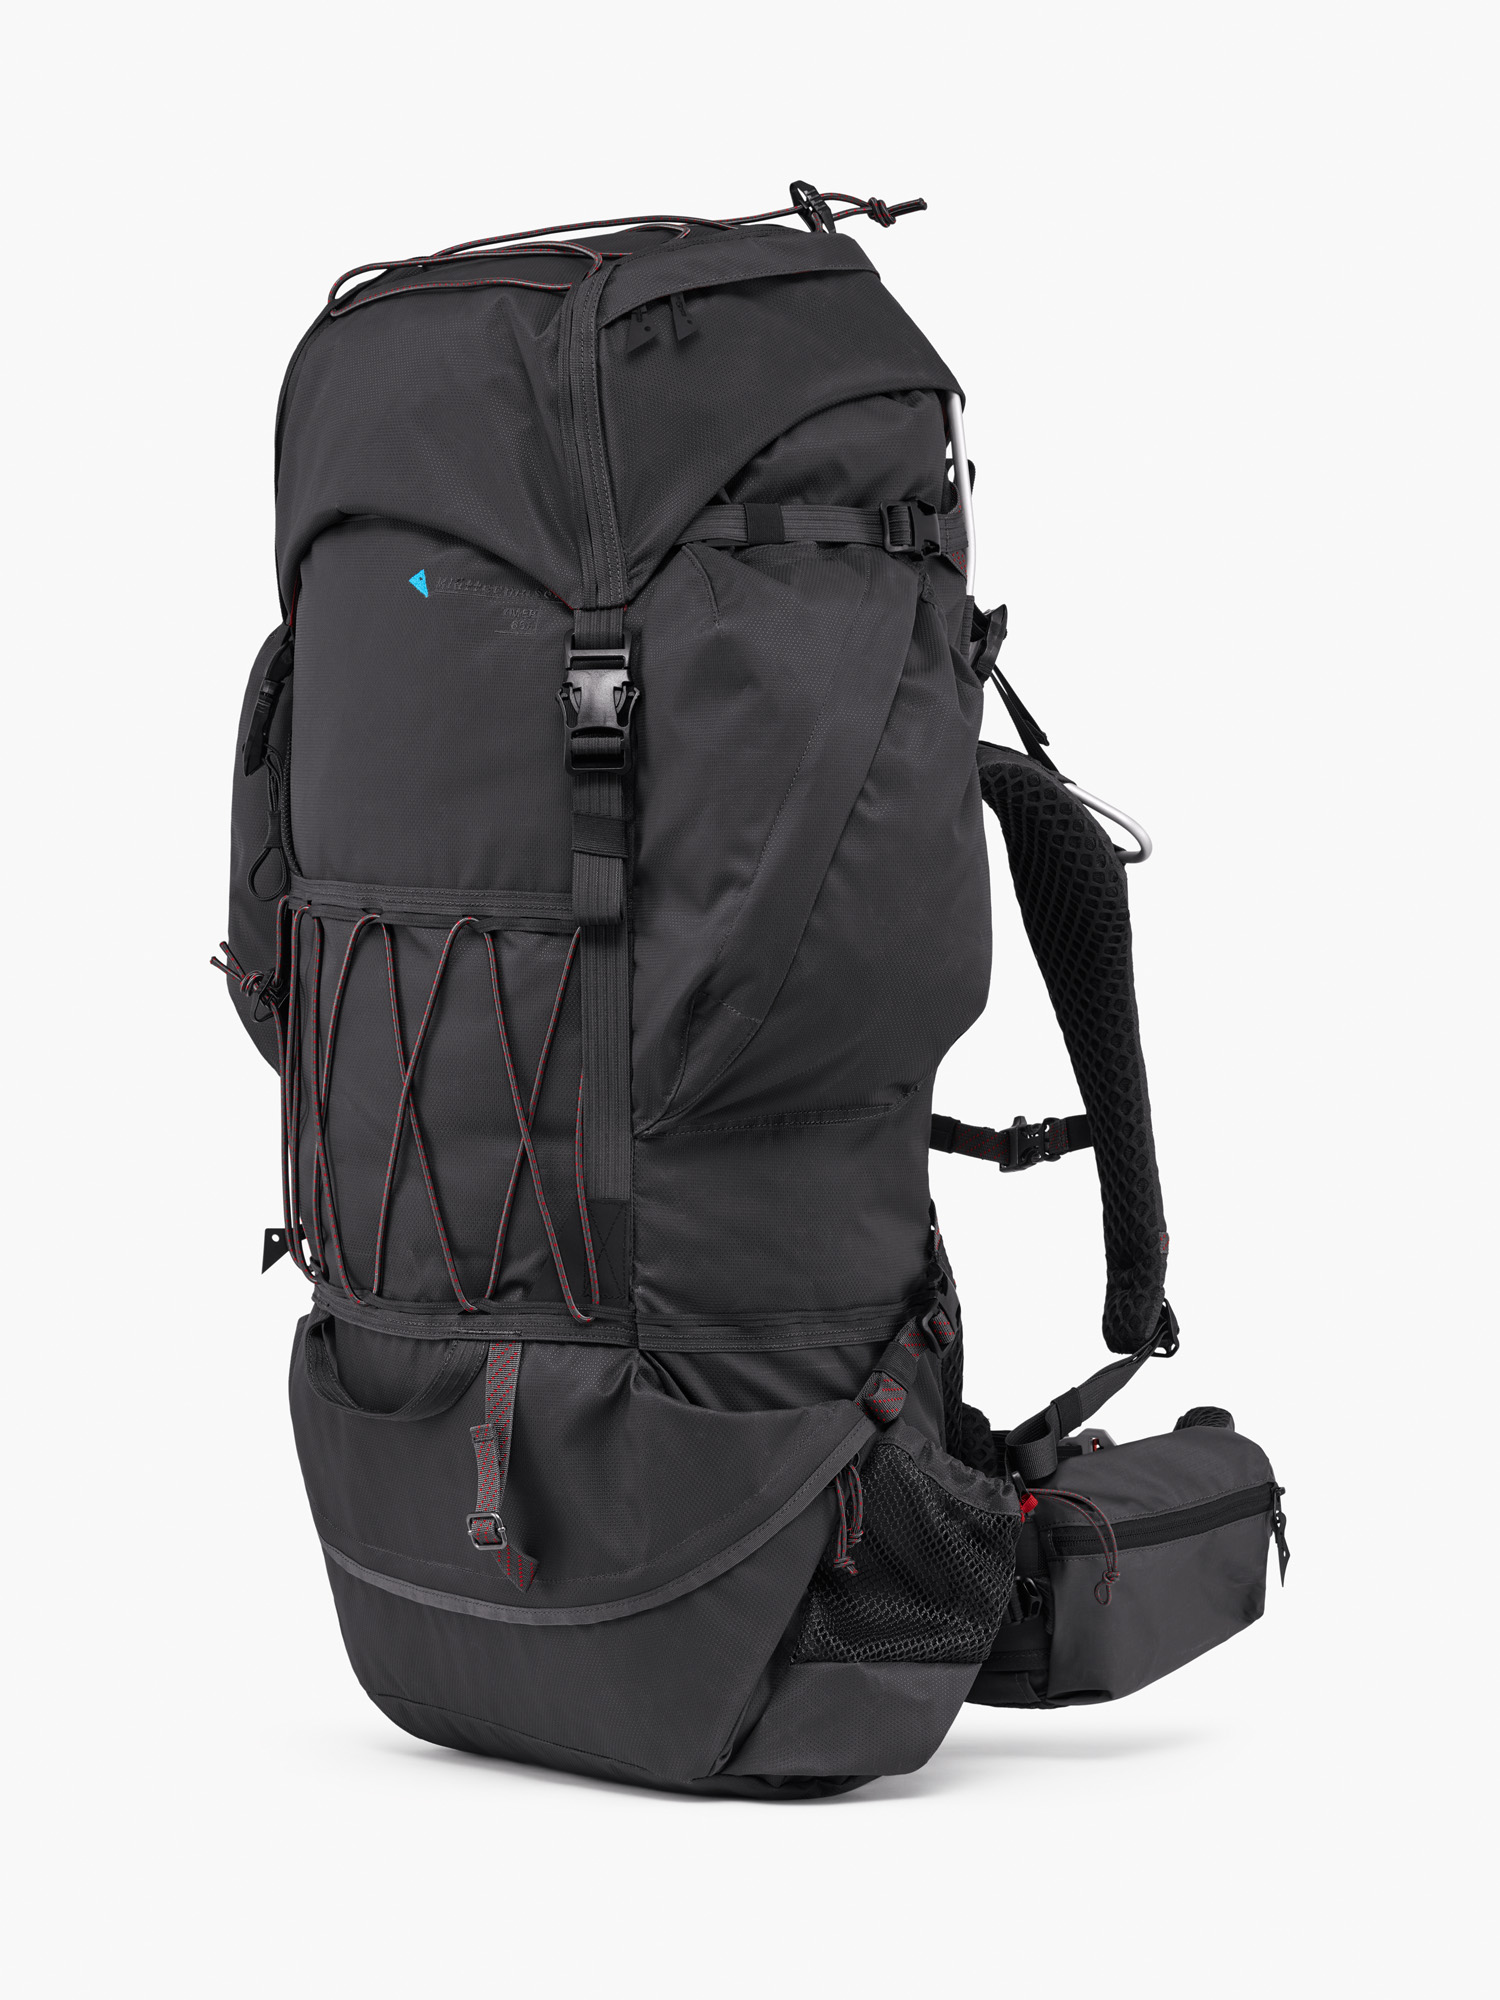 40433U11 - Ymer Backpack 65L 12L - Raven